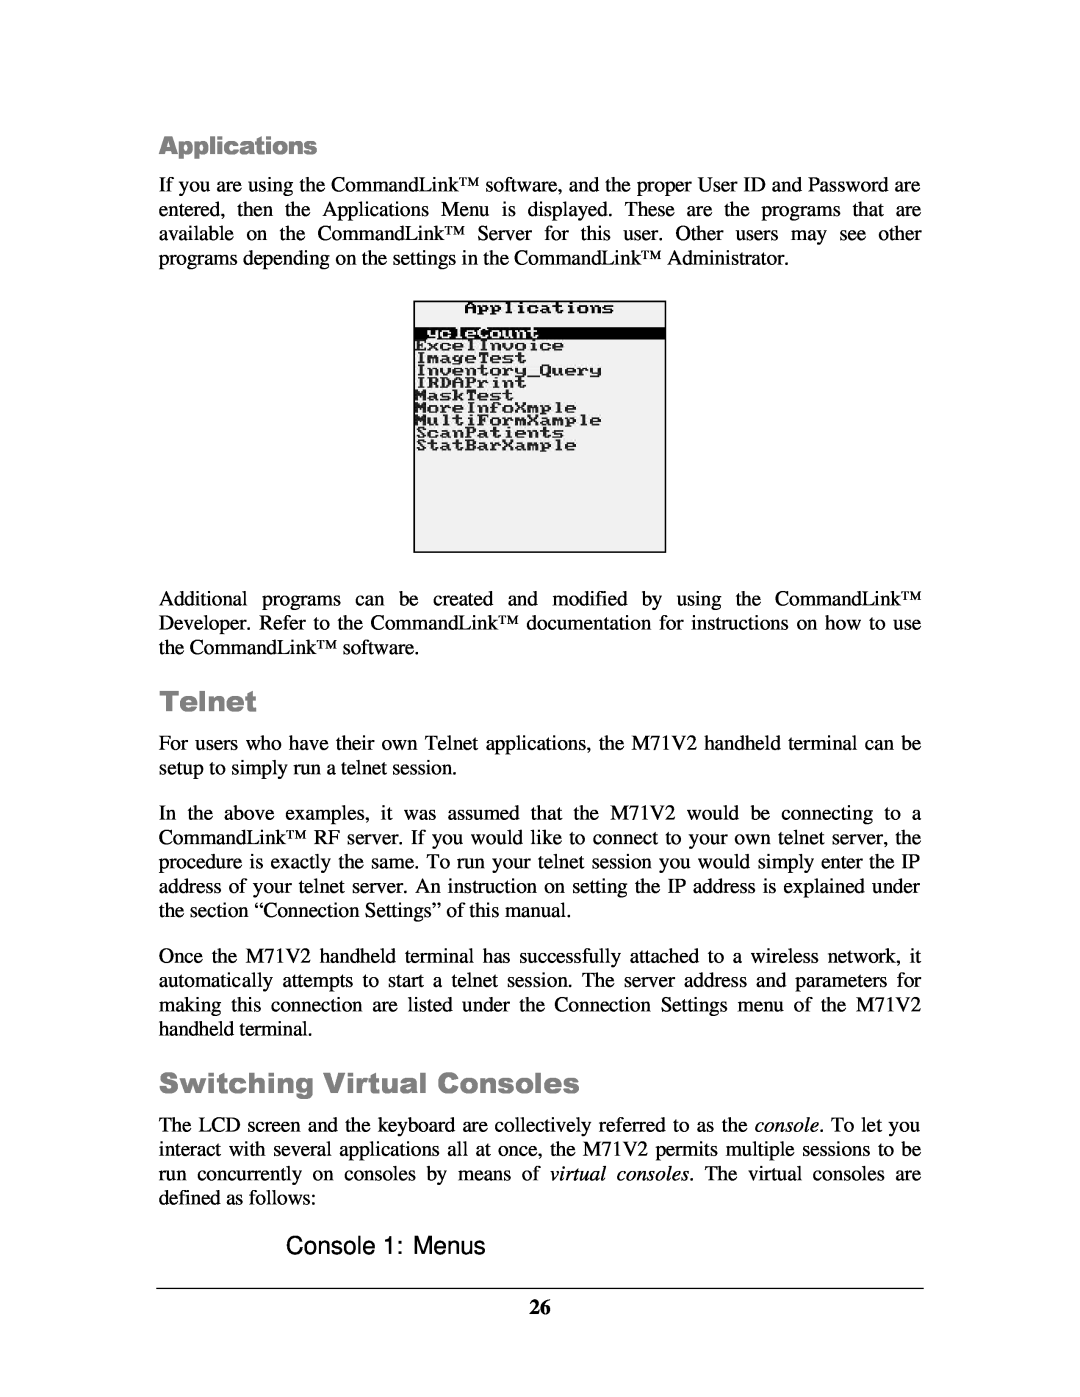 IBM M71V2 manual Telnet, Switching Virtual Consoles, Applications, Console 1 Menus 